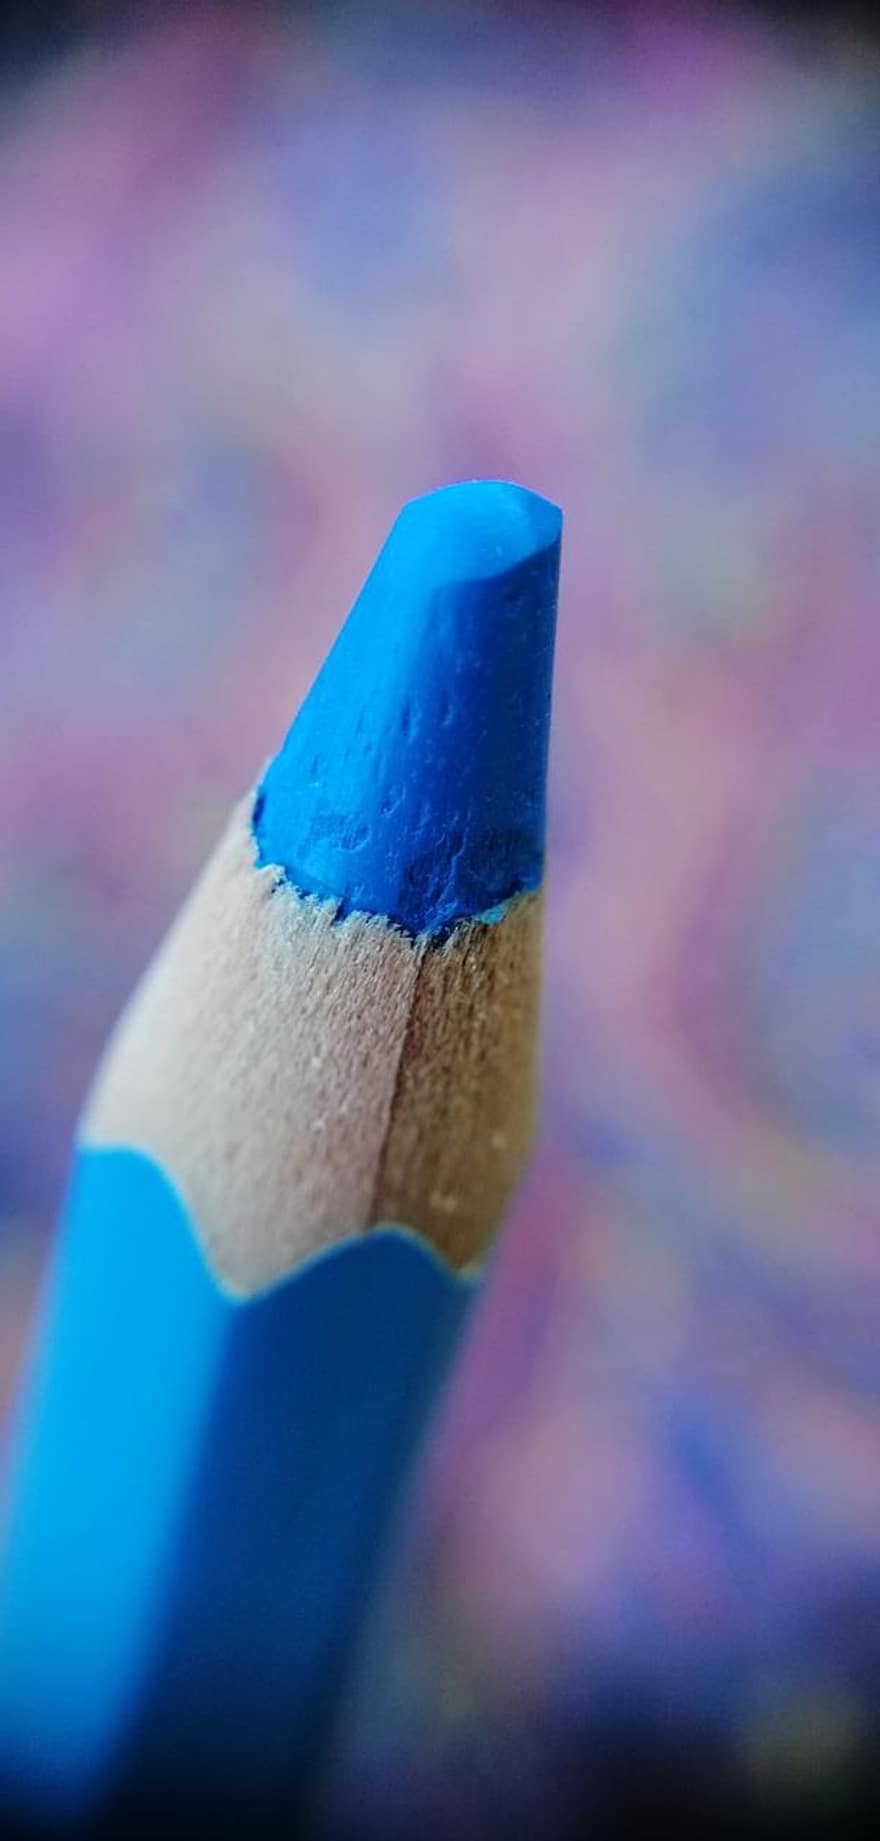 Renkli kalem, Mavi Kalem, mavi renk kalem, mavi, Sanat ve El işi, Sanat malzemeleri, renklendirici malzeme, boyama, makro fotoğrafçılık, bokeh